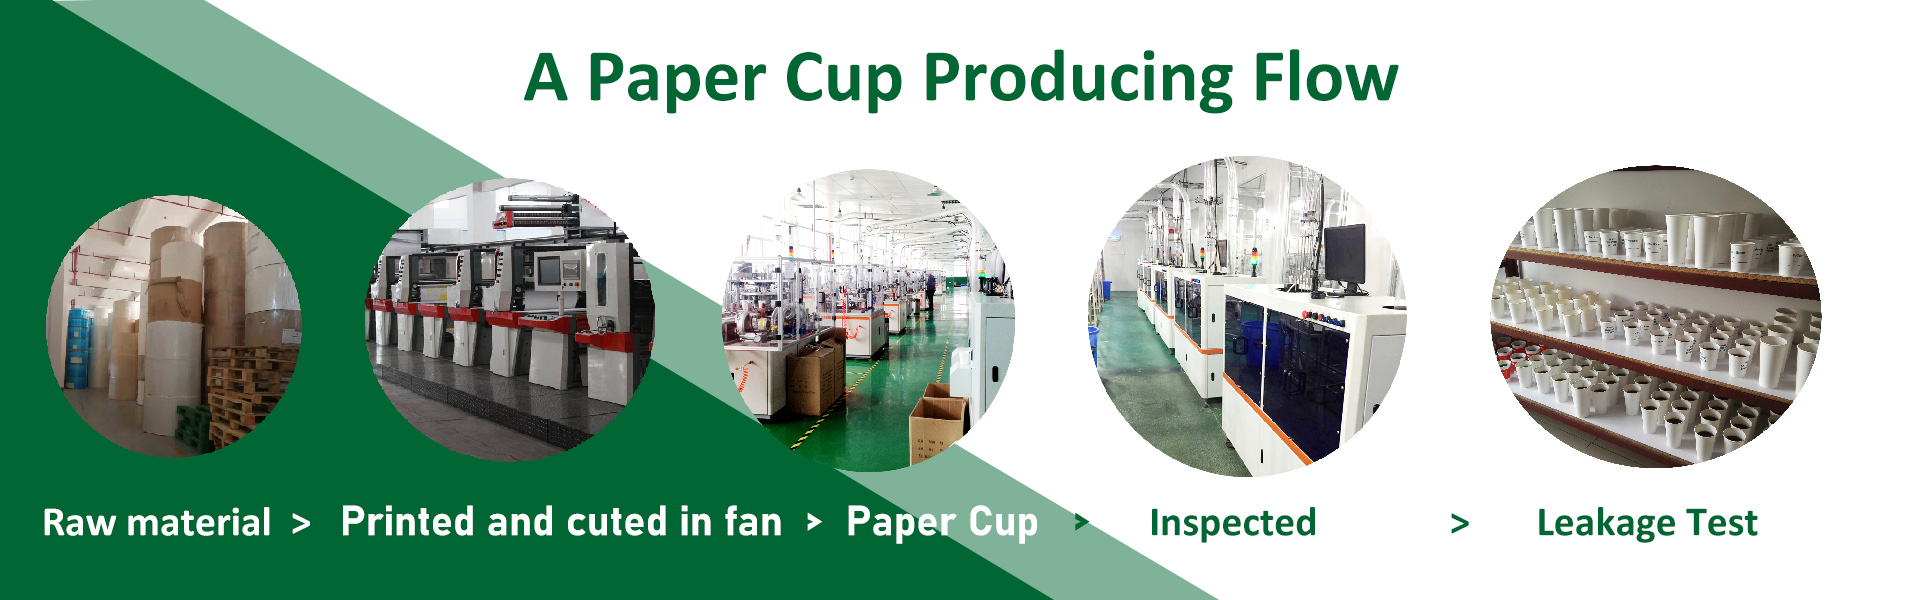 χάρτινο κύπελλο, χάρτινα ποτήρια μίας χρήσης, χάρτινα ποτήρια,xinhua paper cup factory